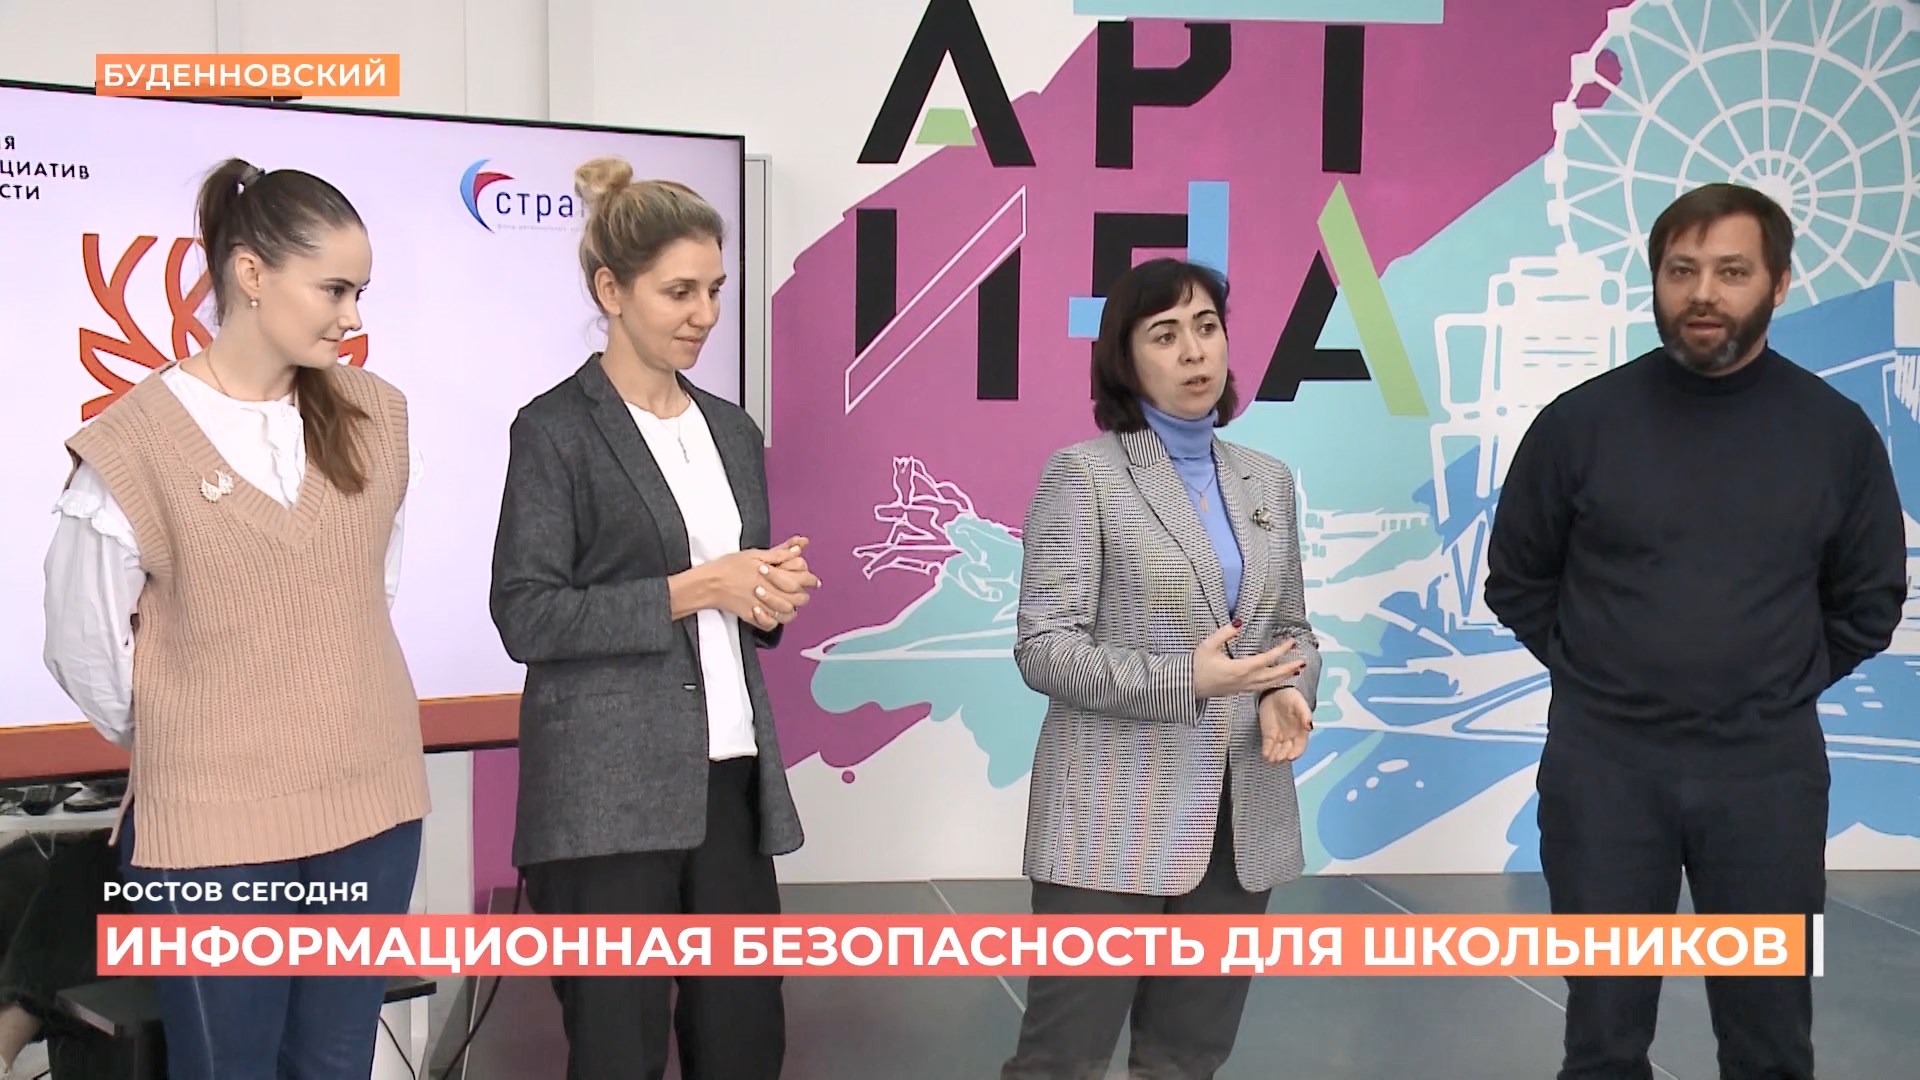 Методические рекомендации по информационной безопасности для школьников разрабатывают в Ростове